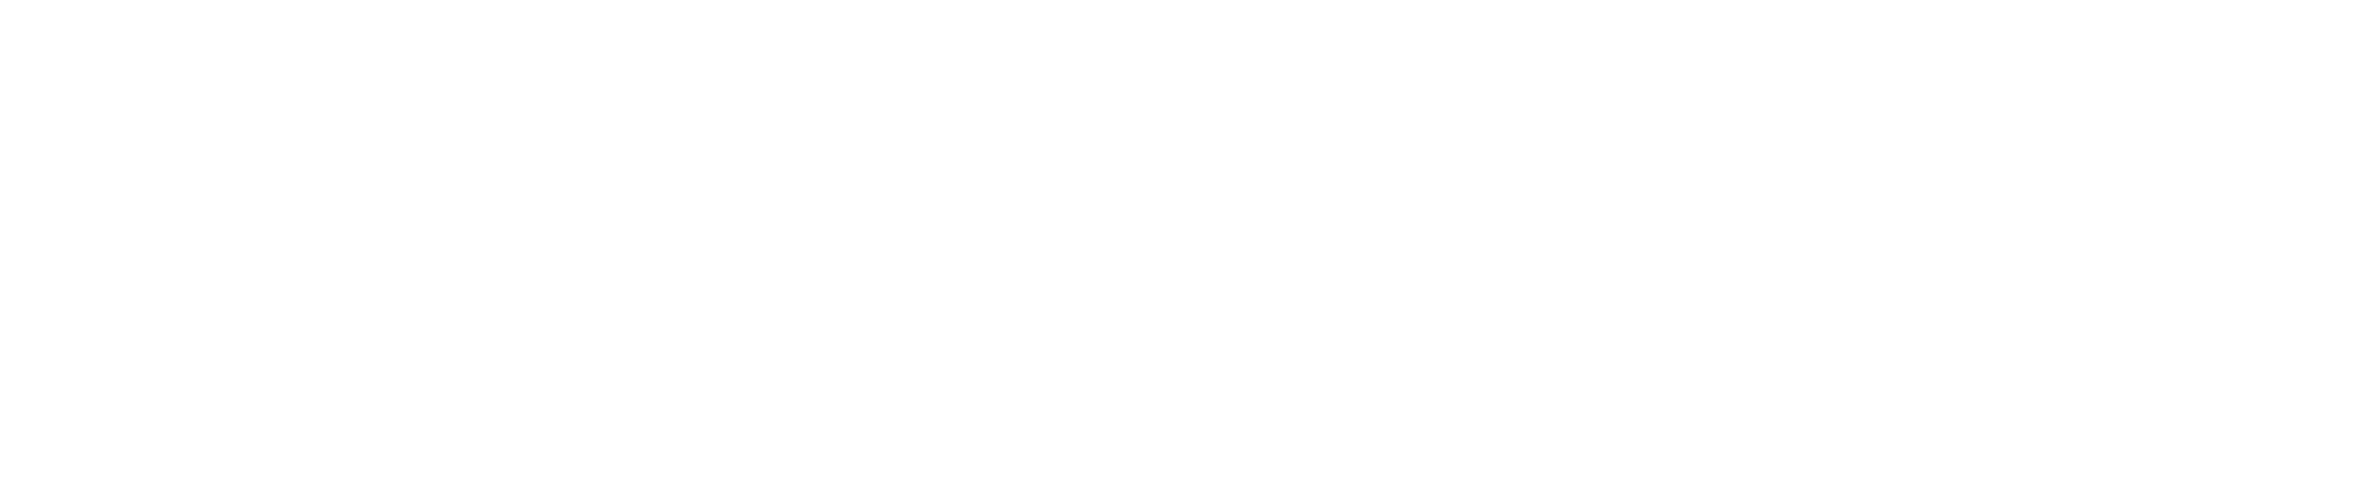 Stewart Design Studio Bespoke Bathrooms and Kitchens in Renfrewshire